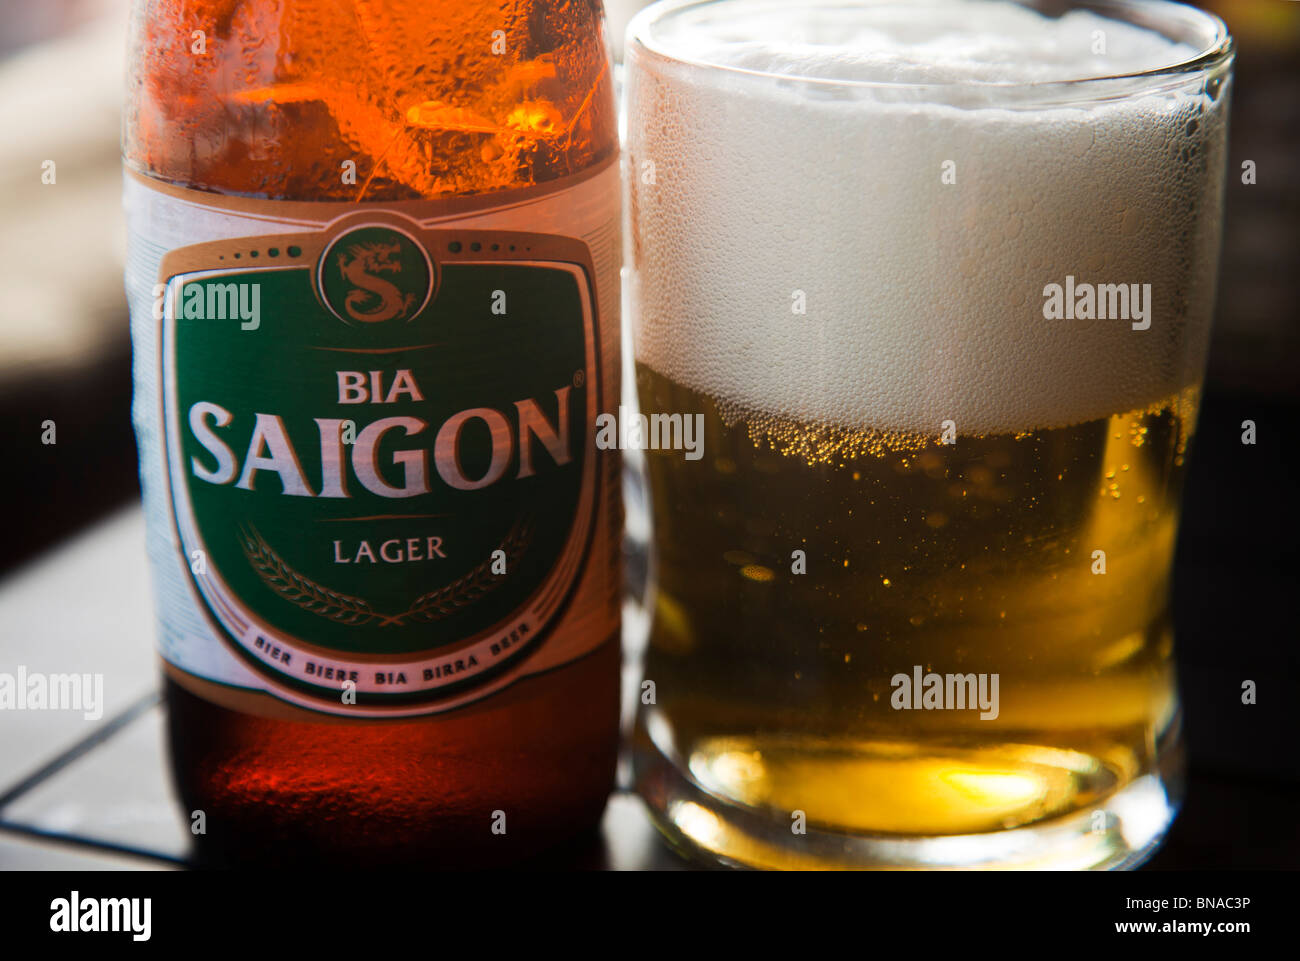 La bière vietnamienne Sagon label vert bouteille et verre Banque D'Images